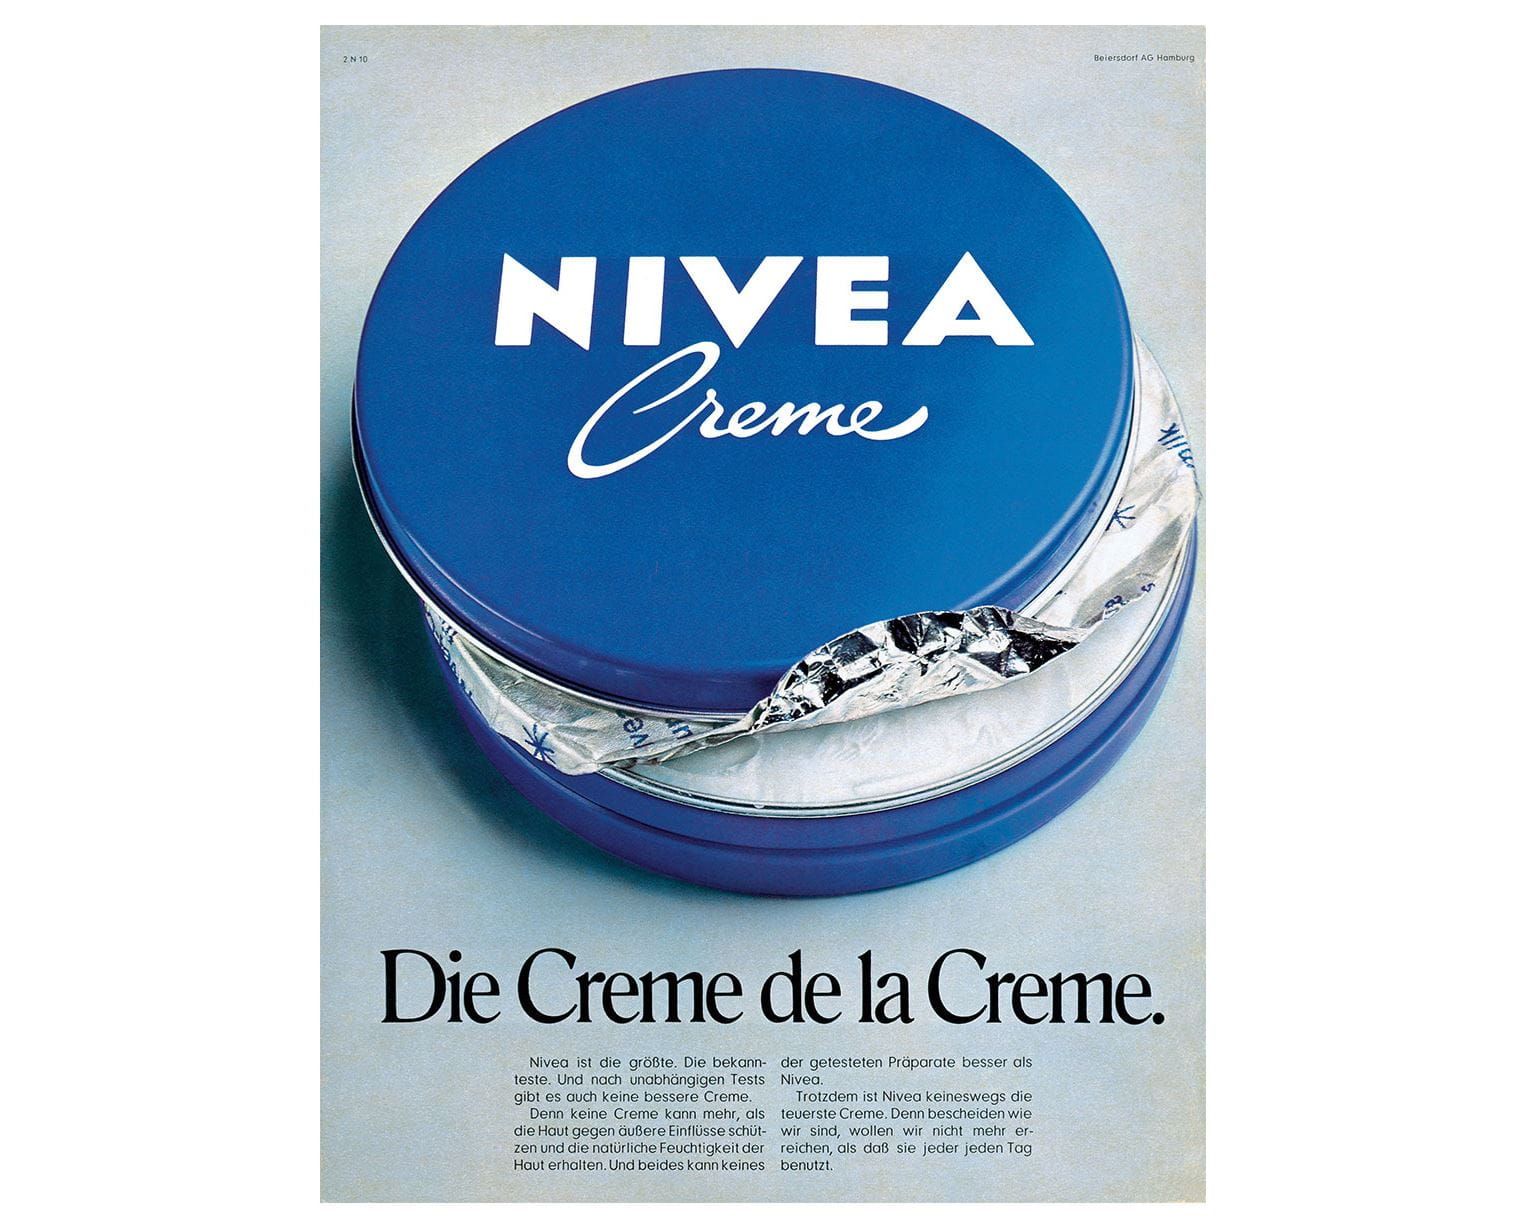 Anúncio NIVEA, 1971